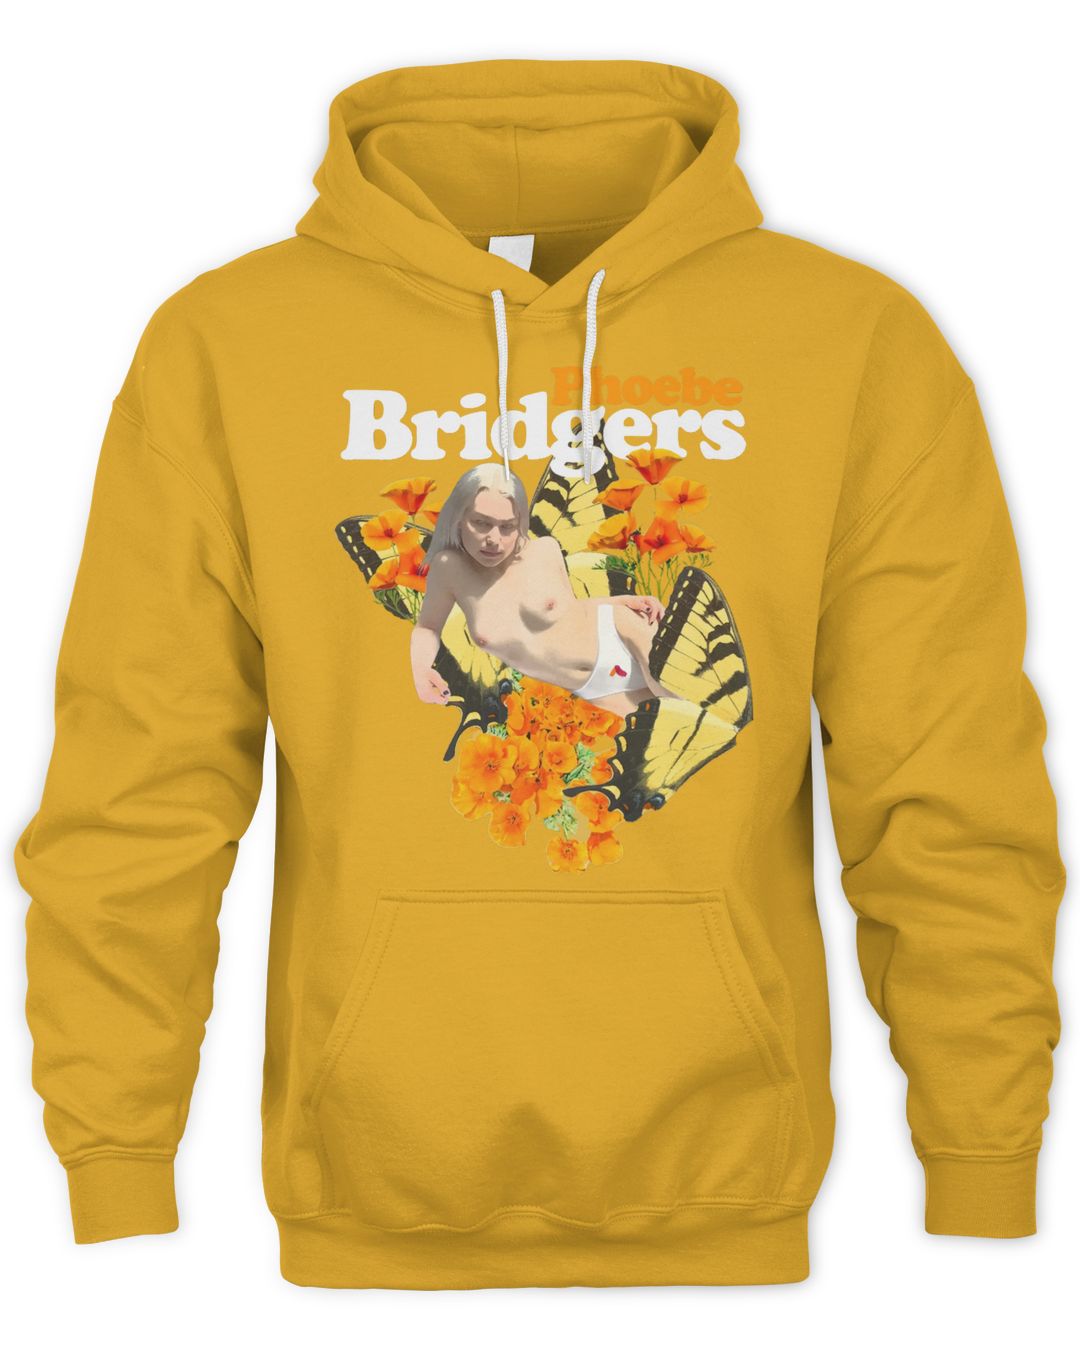 Phoebe Bridgers Tour Merch Butterfly Shirt